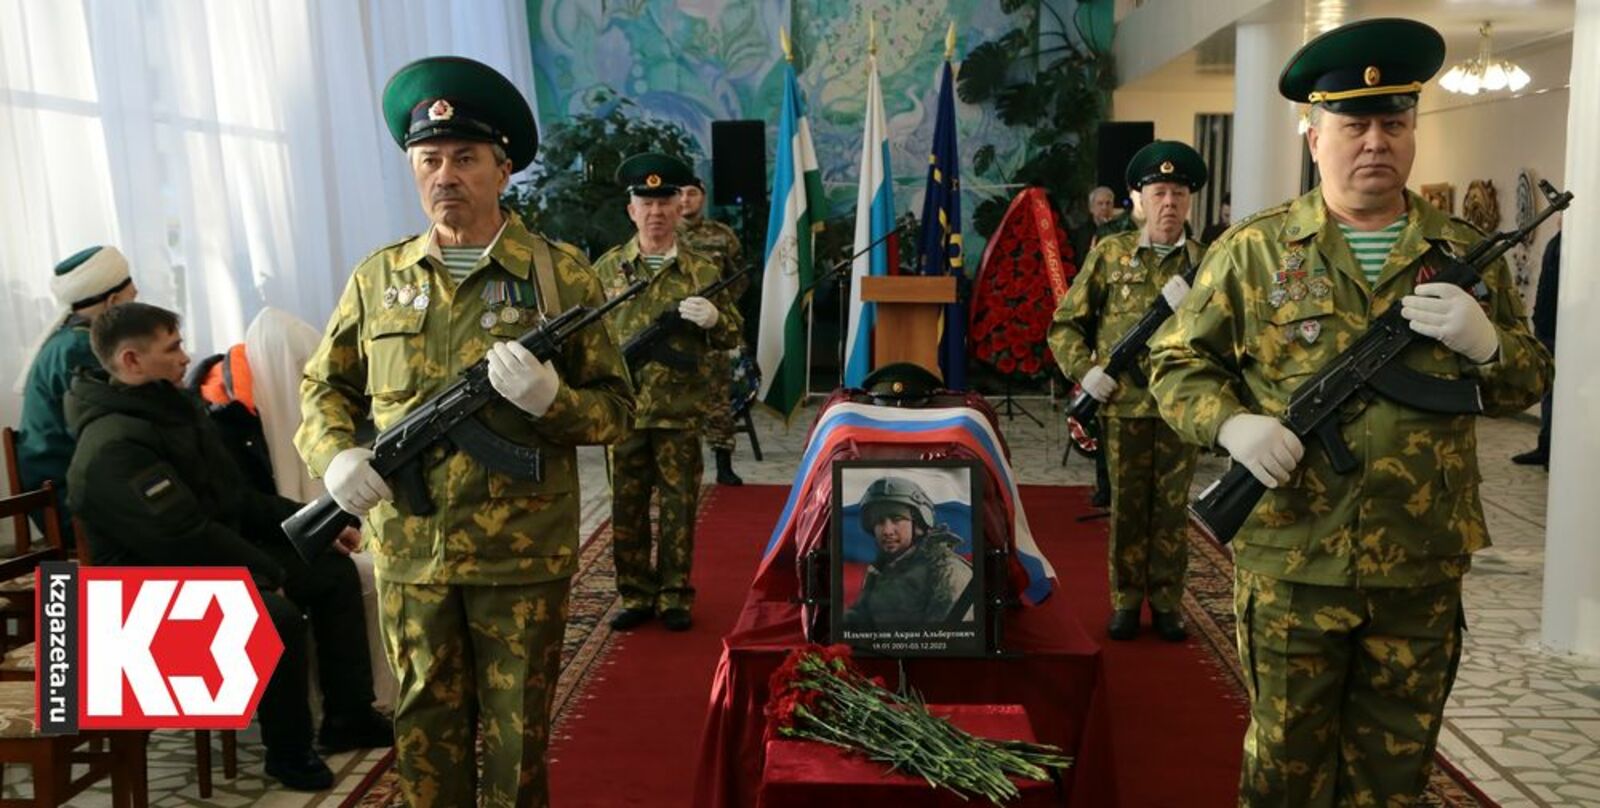 С воинскими почестями проводили в последний путь погибшего бойца ветераны боевого братства. Фото: Руслан Никонов, «КЗ».